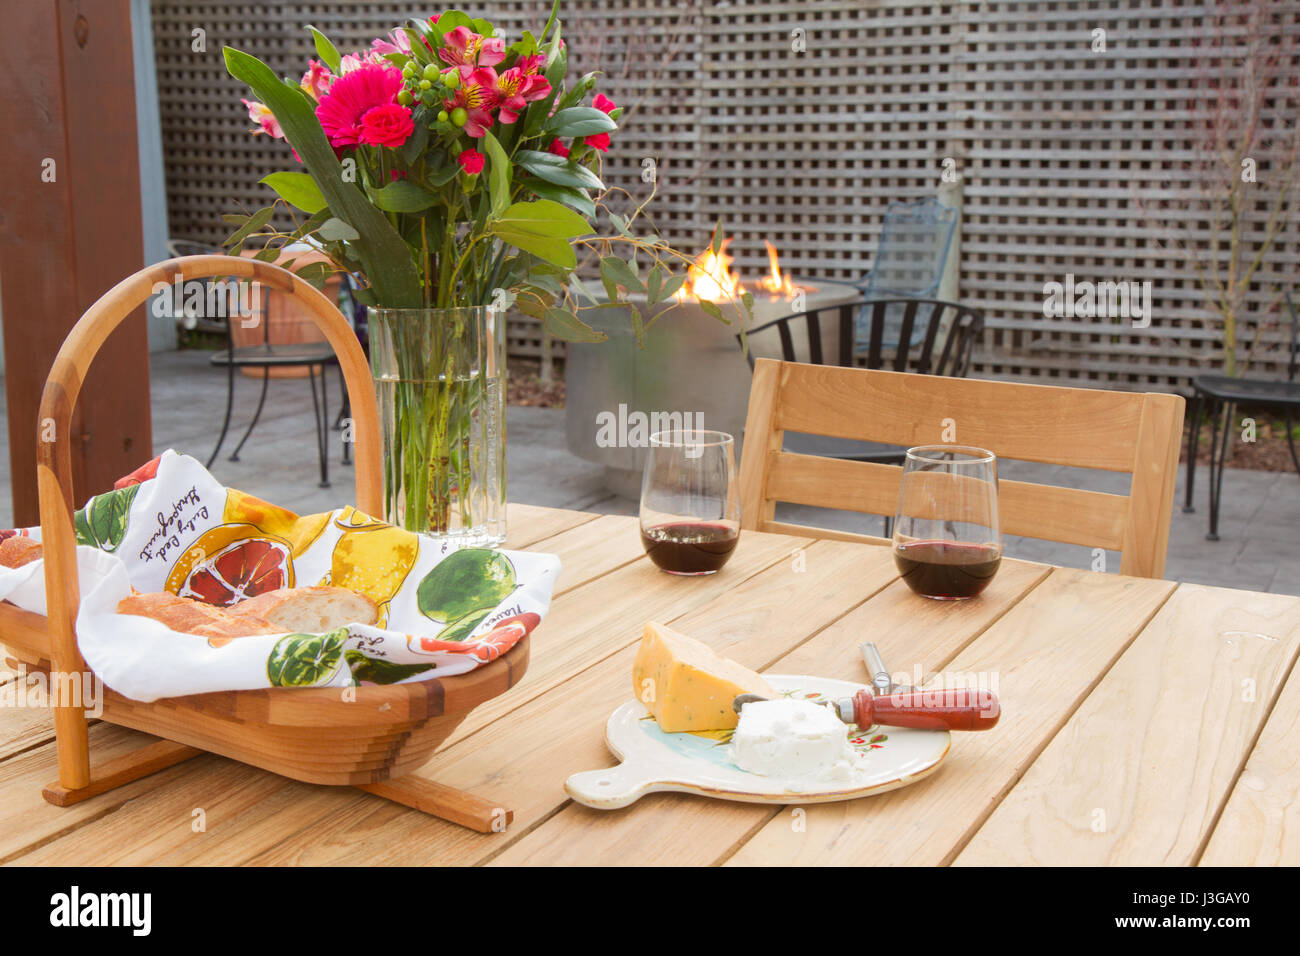 Zwei Gläser Rotwein auf Holztisch mit Picknick-Korb und Keil von Käse auf Teller mit Messer. Blumen am Tisch, Feuerstelle mit Feuer im Hintergrund. Stockfoto